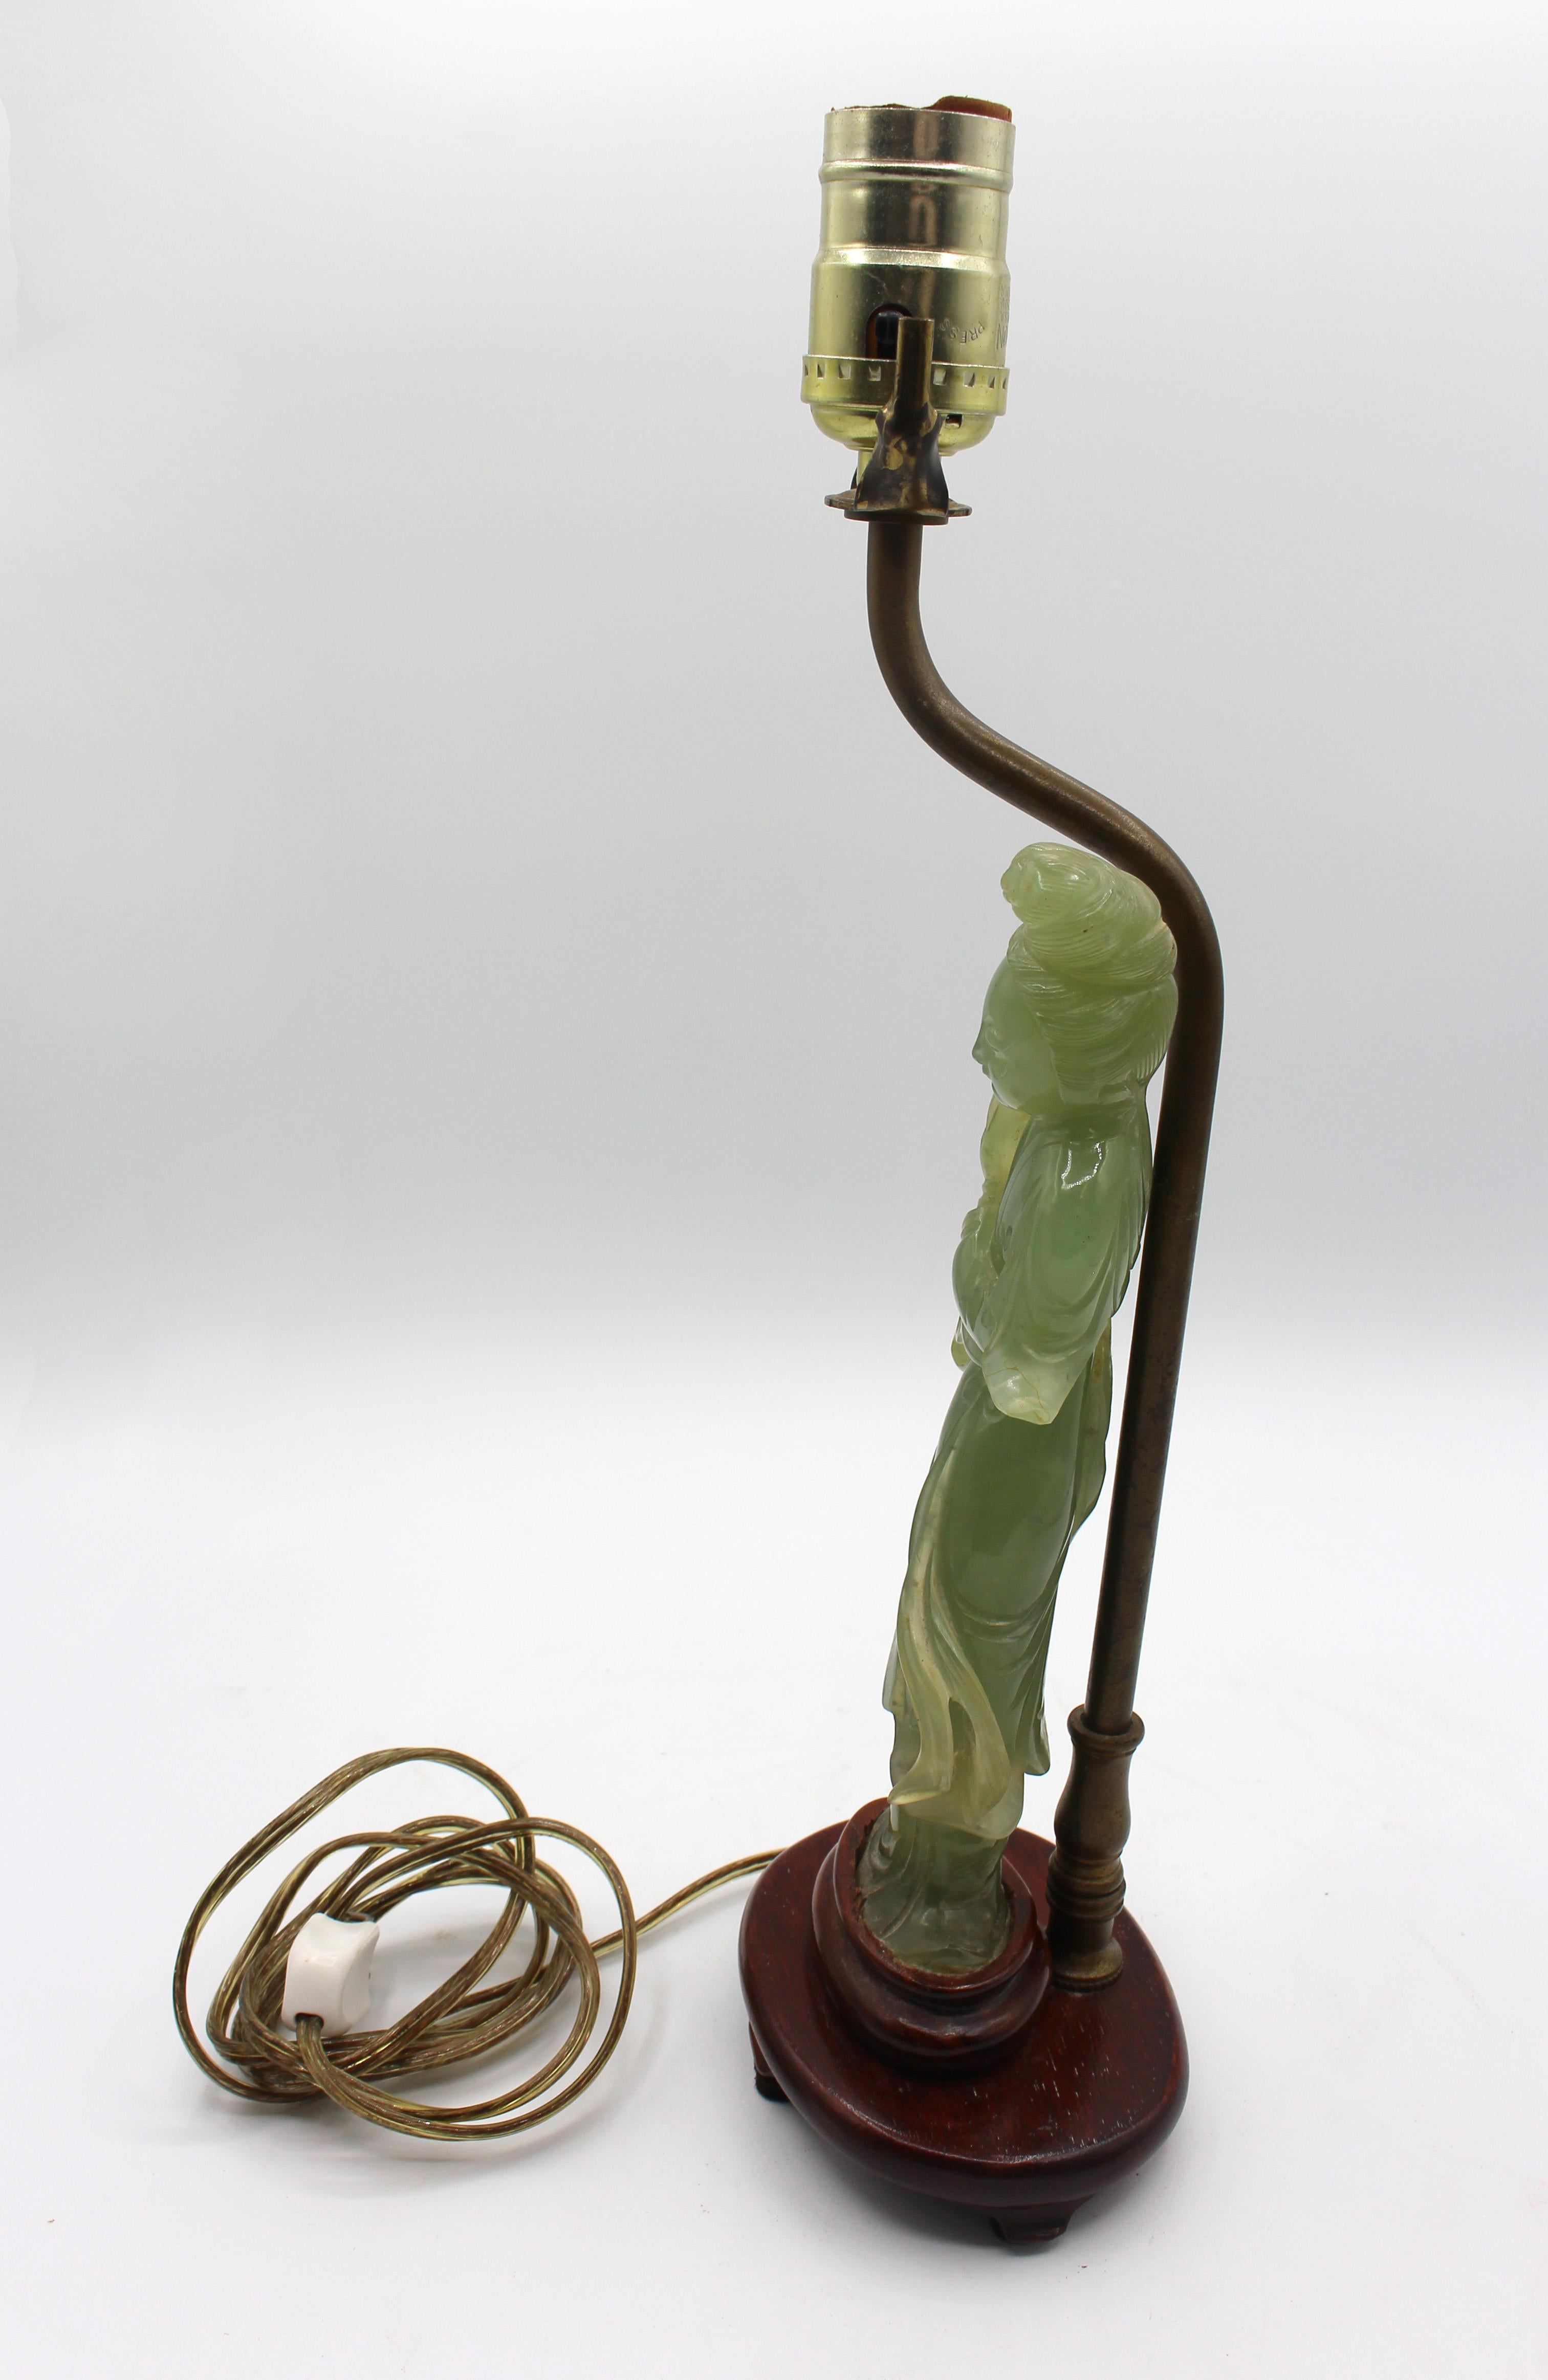 Figure Guan Yin en quartz céladon de la fin du 19e siècle, transformée en lampe, chinoise. Fin des années Qing. Éclairé dans les années 1920 et nouvellement électrifié.
Figure : 8.25